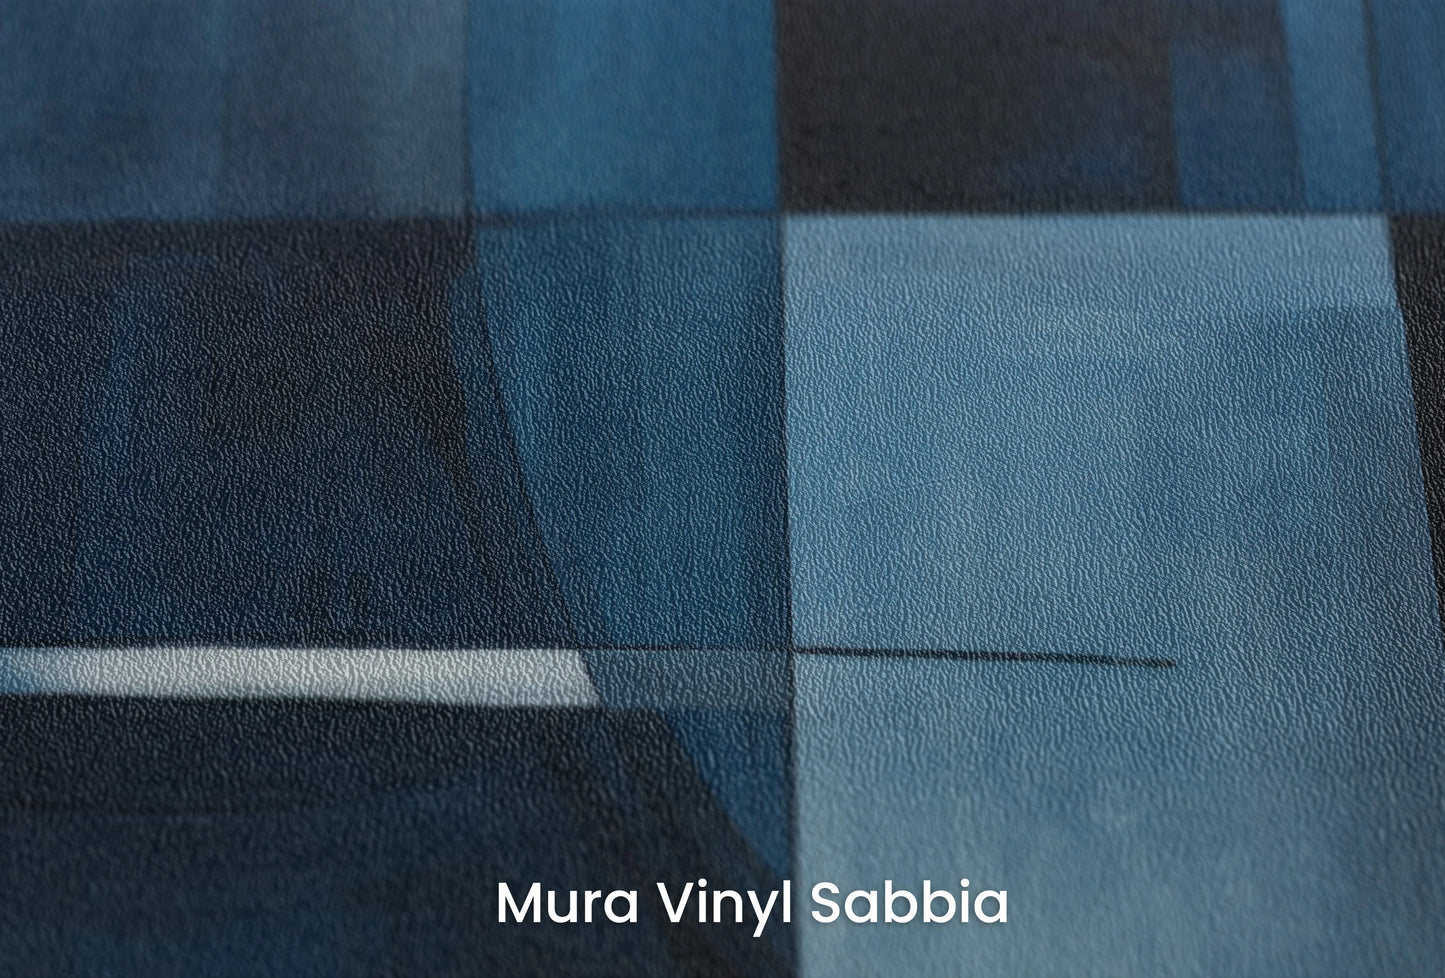 Zbliżenie na artystyczną fototapetę o nazwie Blue Orbital na podłożu Mura Vinyl Sabbia struktura grubego ziarna piasku.